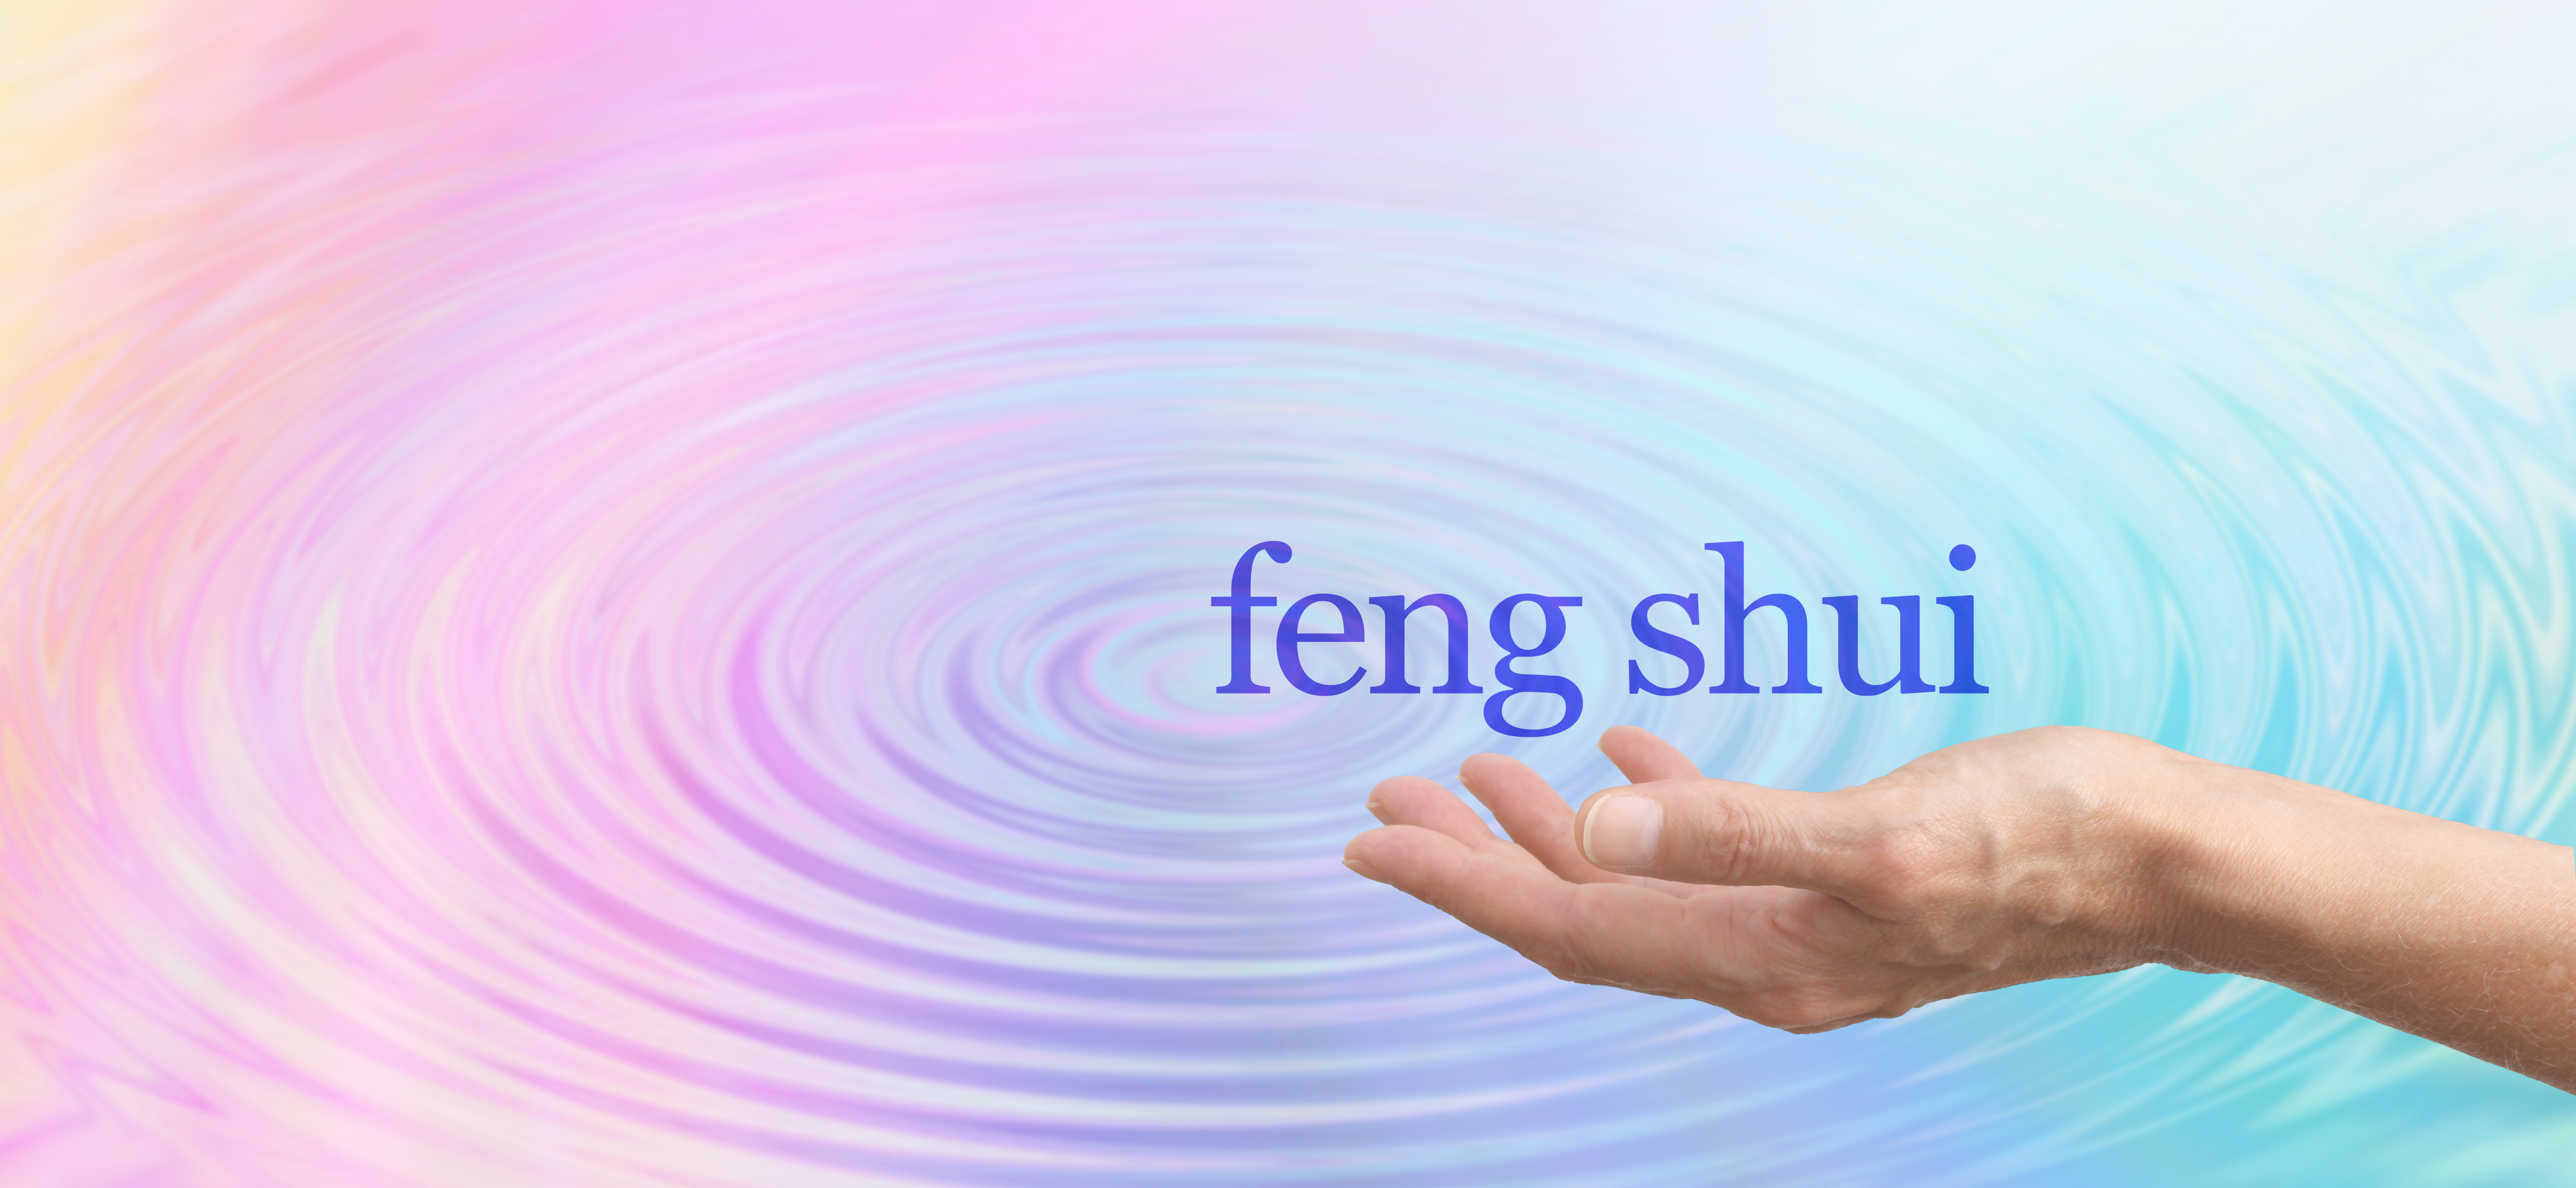 Feng shui para organizar tu oficina